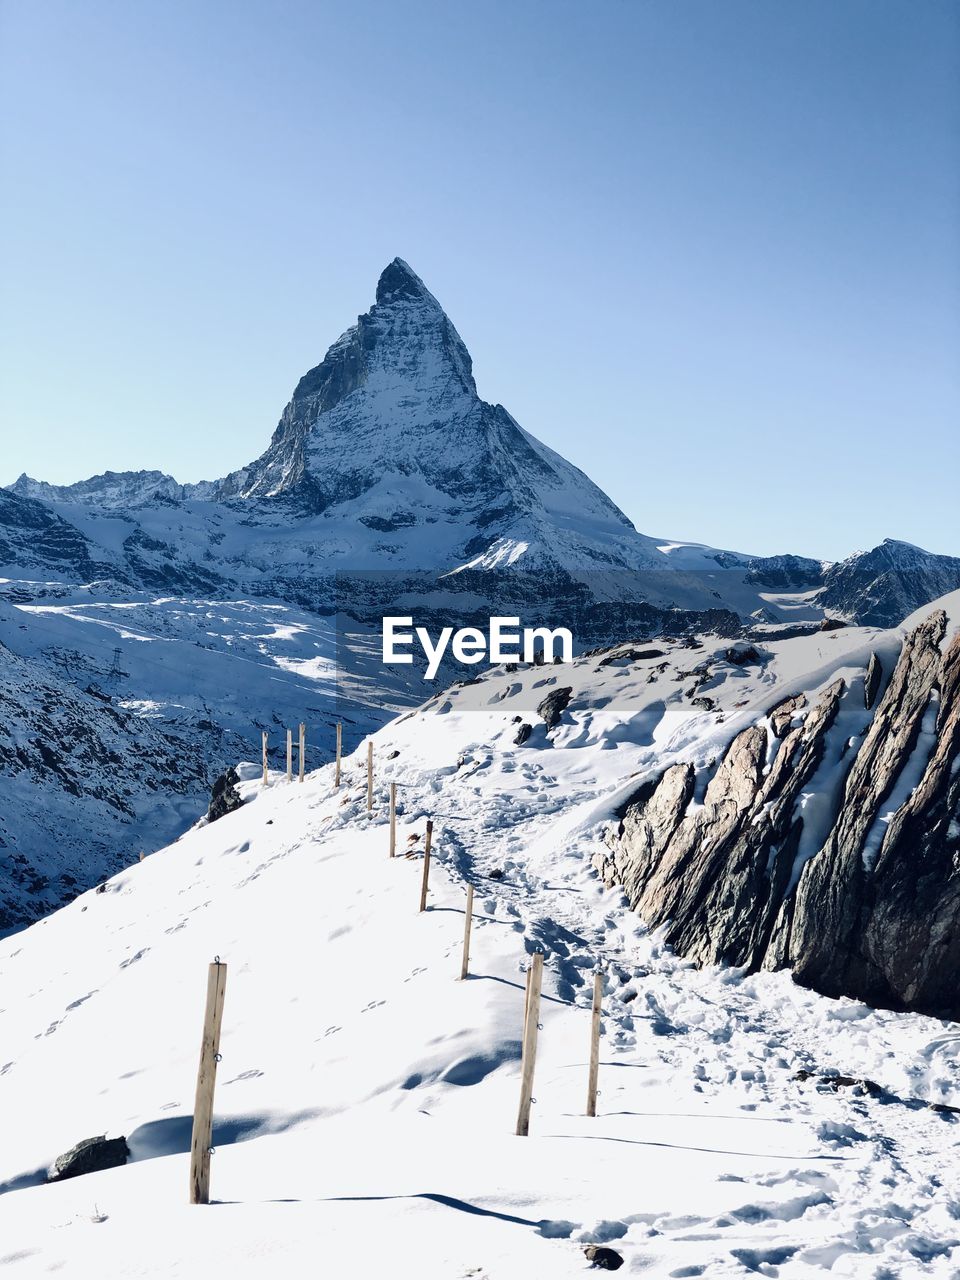 Matterhorn and gornergrad